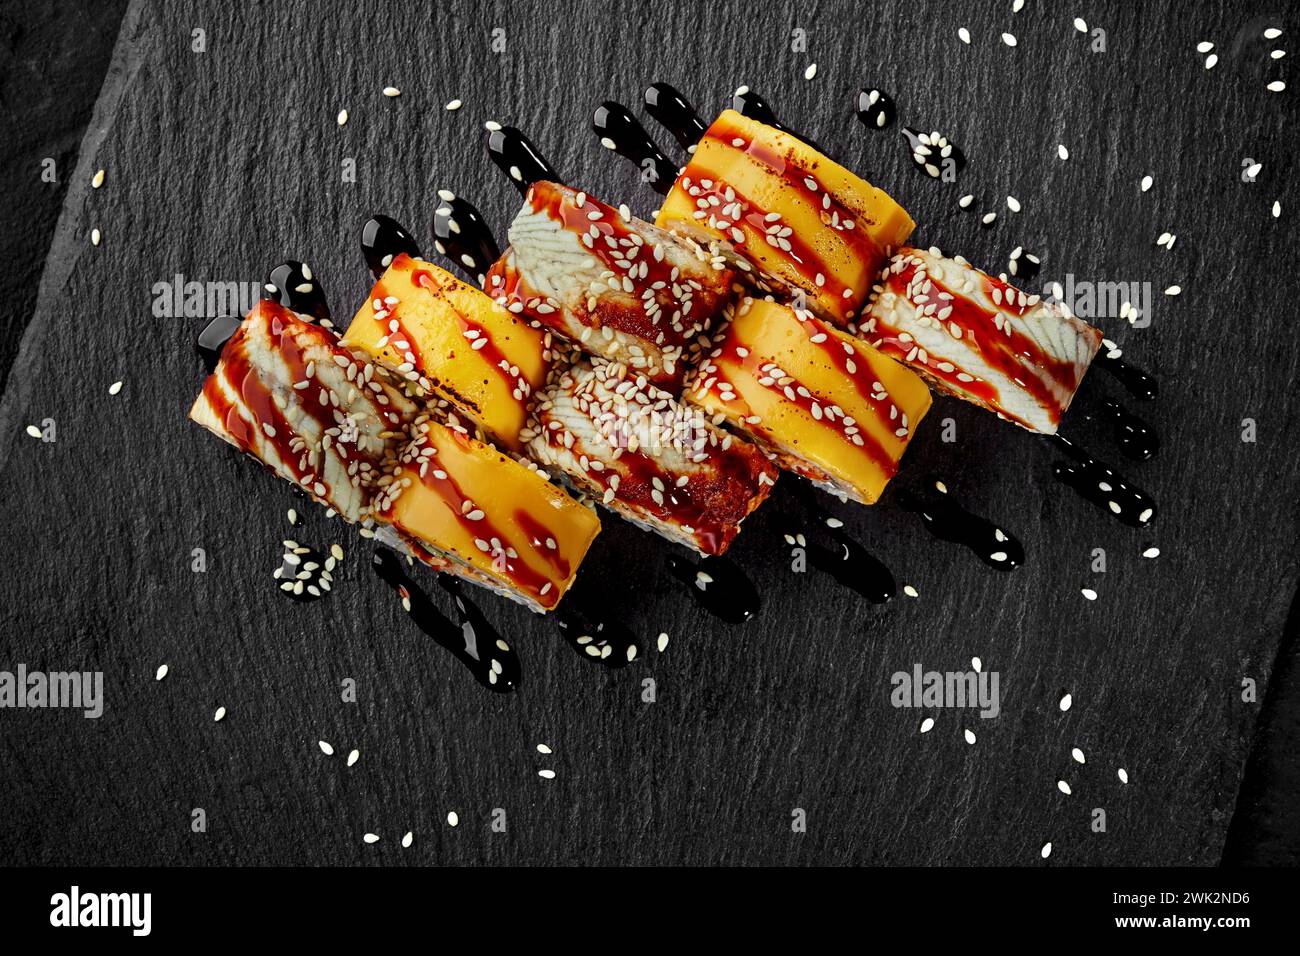 Vue de dessus de rouleaux d'uramaki enveloppés dans des tranches de cheddar et des filets d'anguille habillés de sauce unagi acidulée et saupoudrés de graines de sésame sur le sanglier ardoise noir Banque D'Images